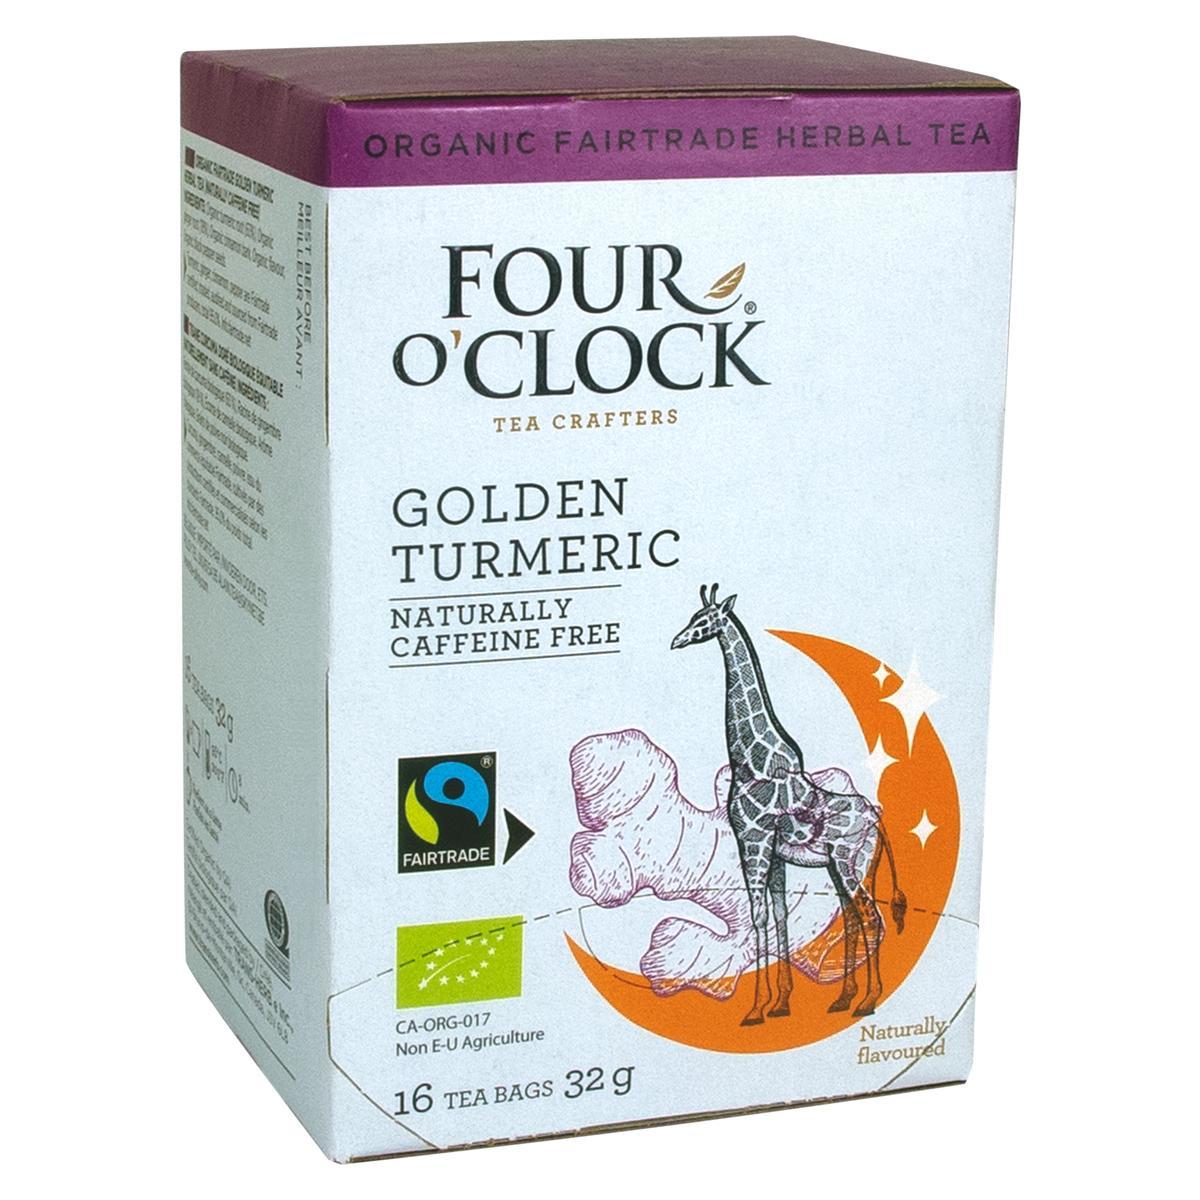 Four O’Clock's Four O'Clock GOLDEN TURMERIC'